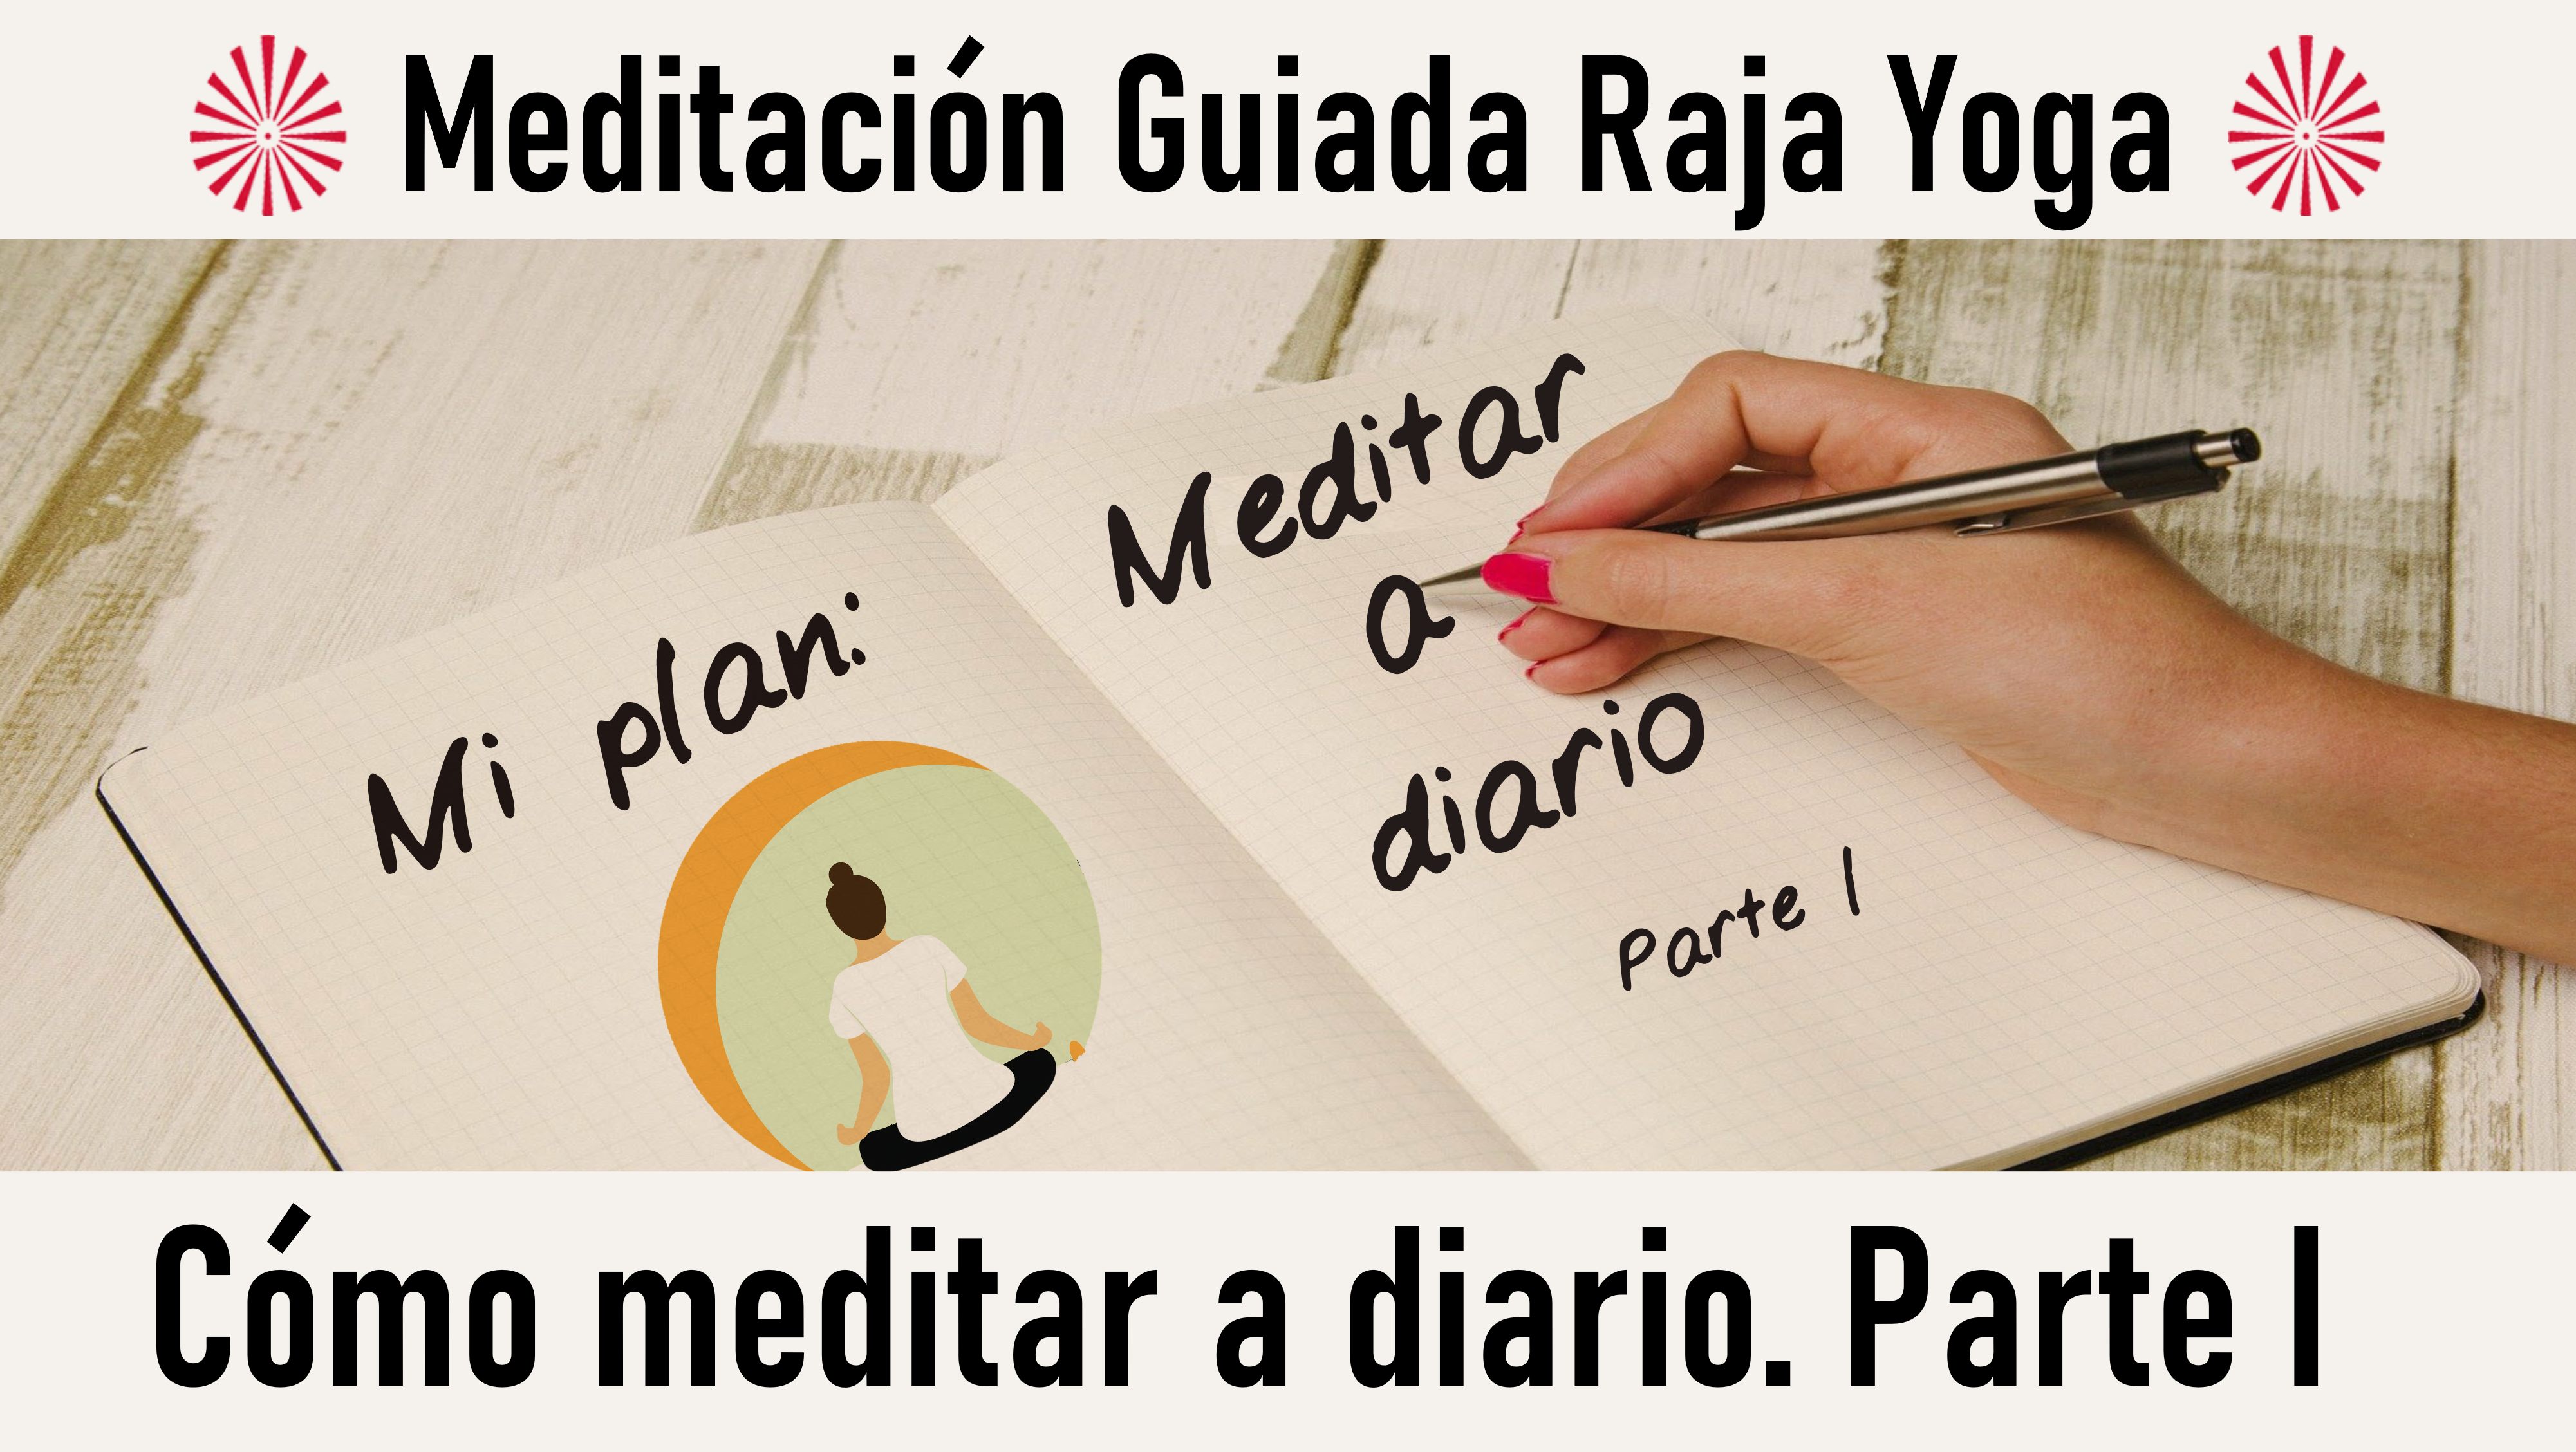 11 Octubre 2020  Meditación guiada: Cómo meditar a diario, parte 1